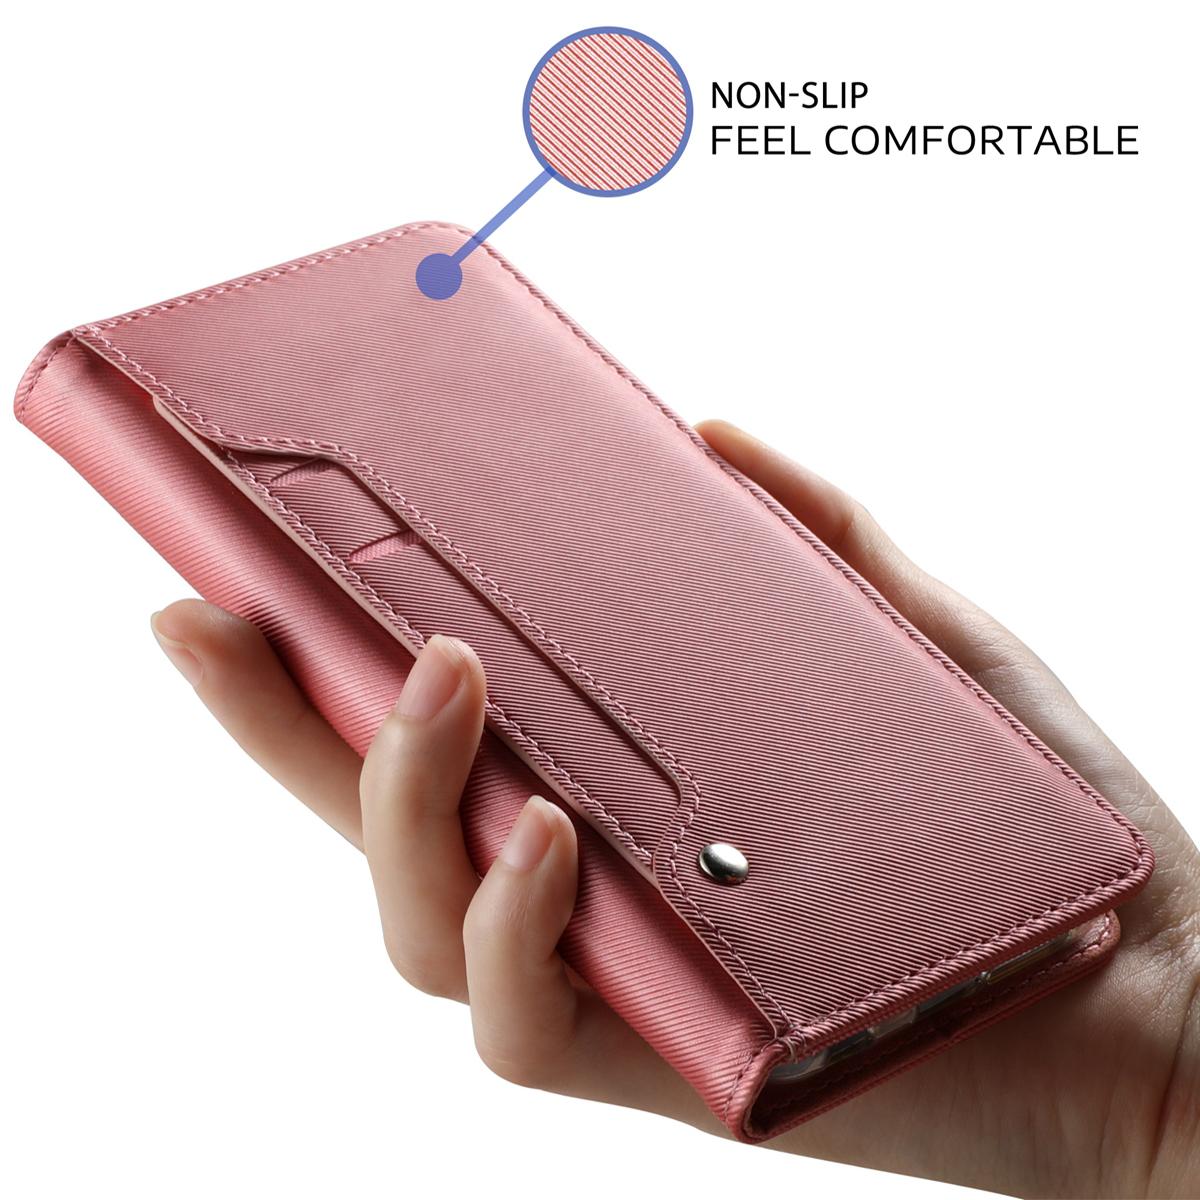 Samsung Galaxy A71 Wallet Case Mirror Pink Gold